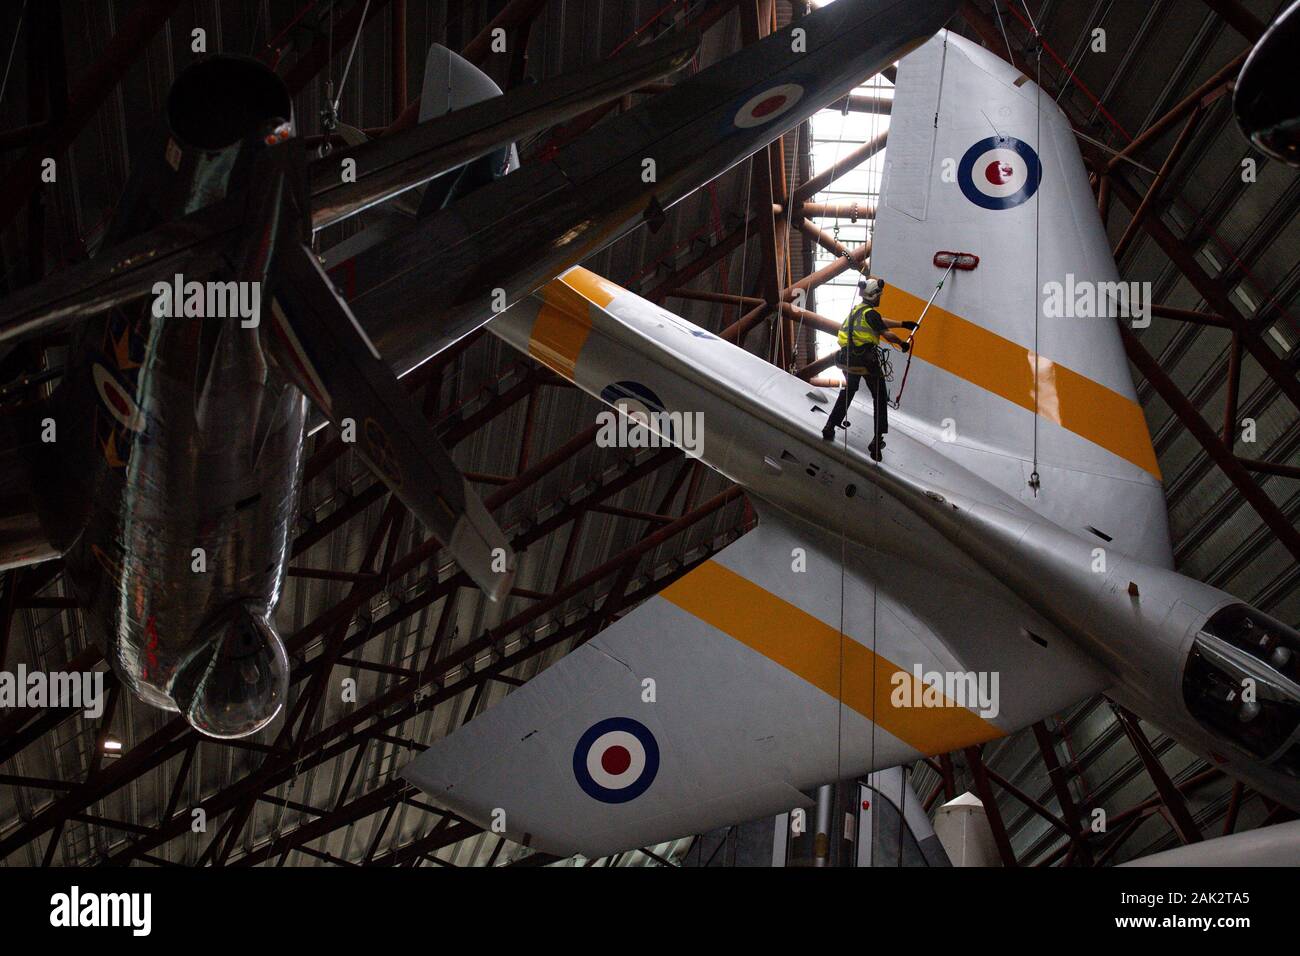 Spezialist Betreiber bei der Royal Air Force Museum Cosford, in der Nähe von Telford, Shropshire, reinigen Sie die ausgesetzt, die Hawker Hunter Flugzeuge angezeigt innerhalb des Museums nationalen Kalten Krieges Ausstellung, die während der jährlichen hochrangigen Flugzeug Reinigung und Wartung. Stockfoto